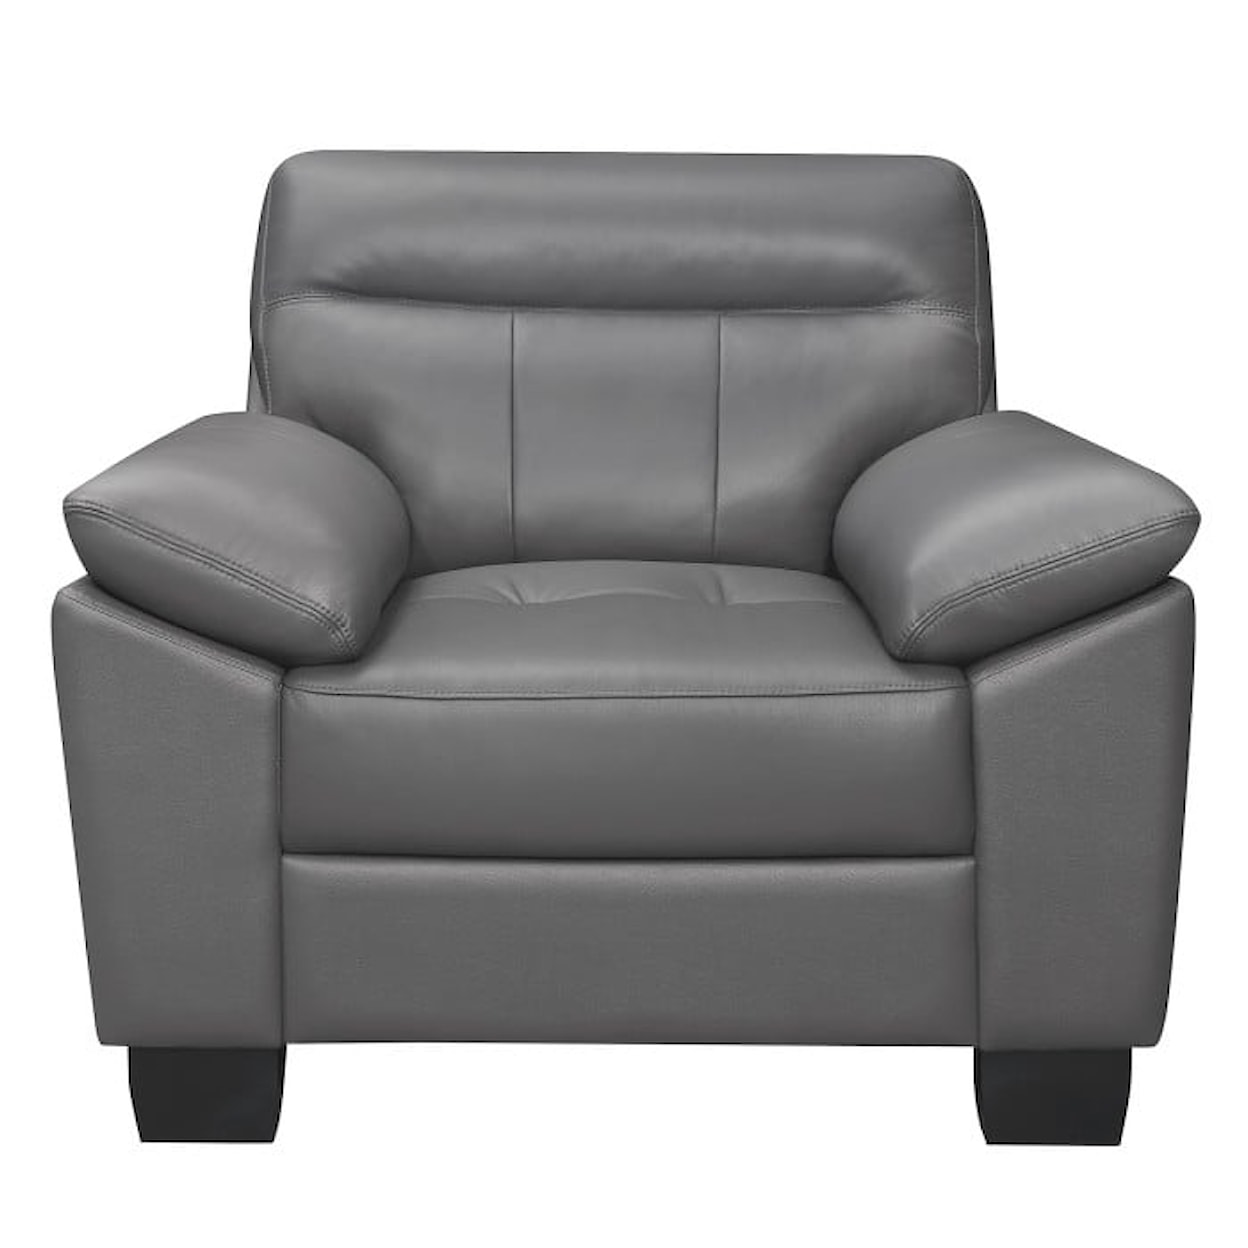 Homelegance Furniture Denizen Accent Chair